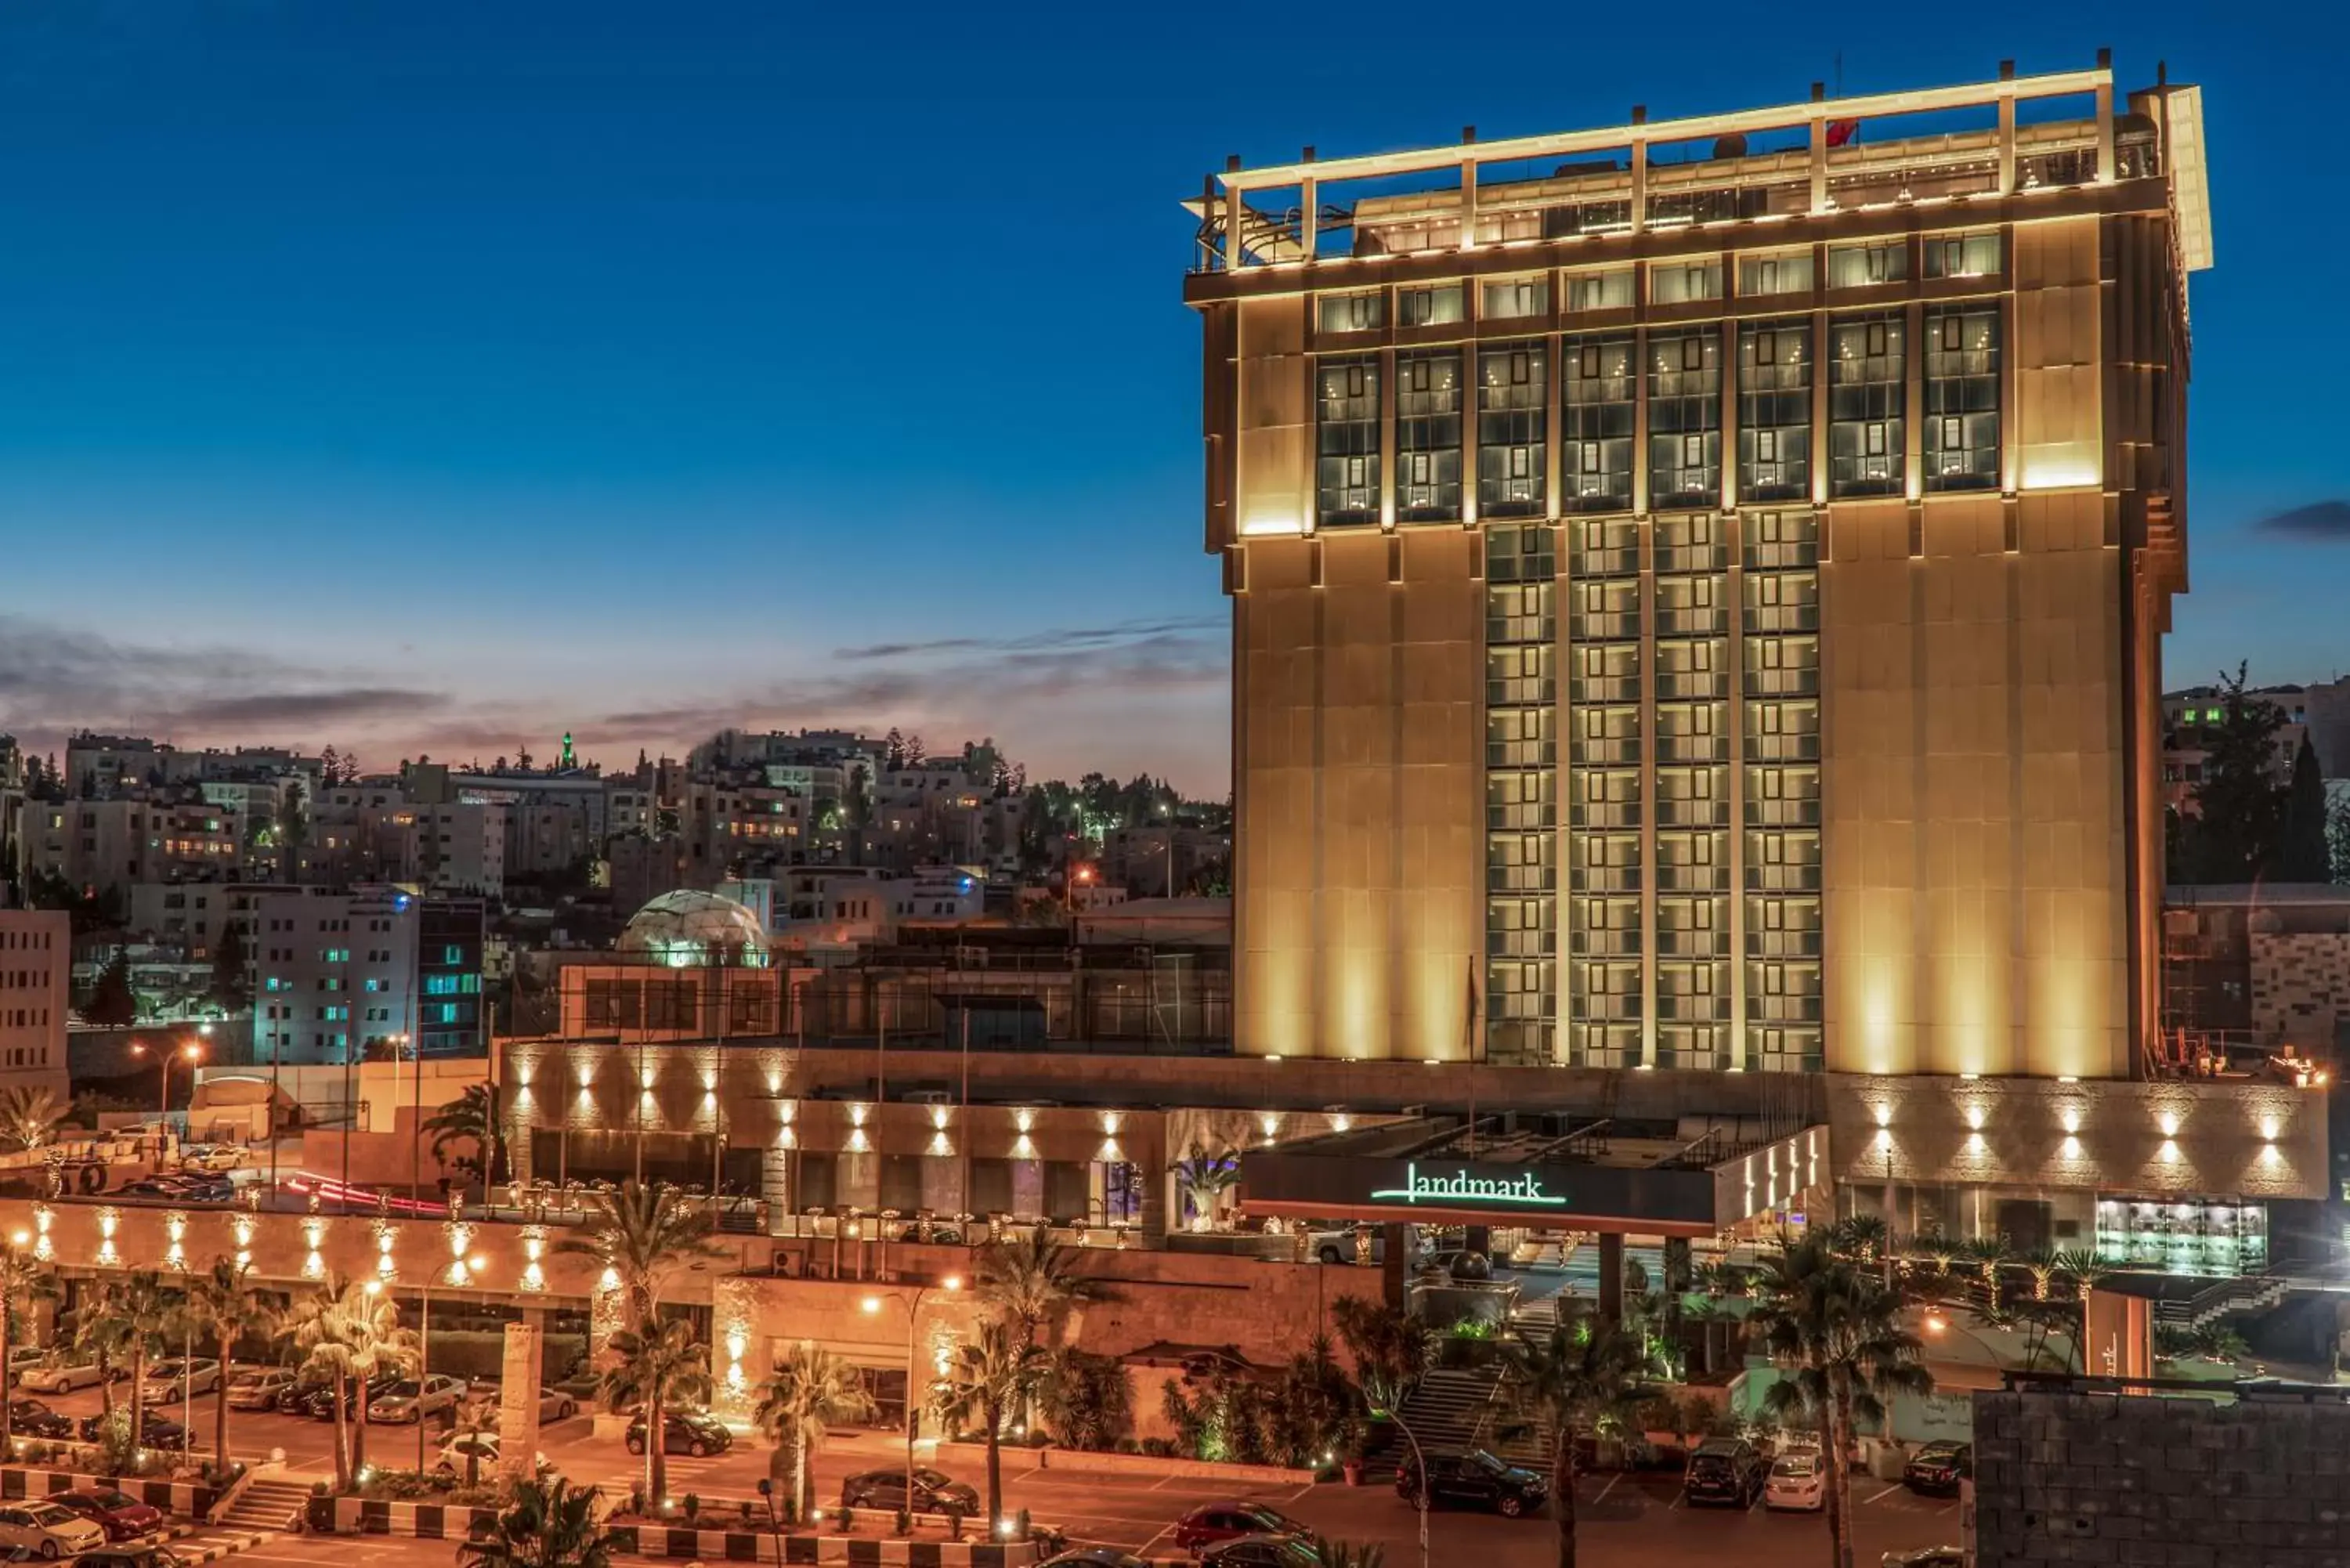 Facade/entrance in Landmark Amman Hotel & Conference Center